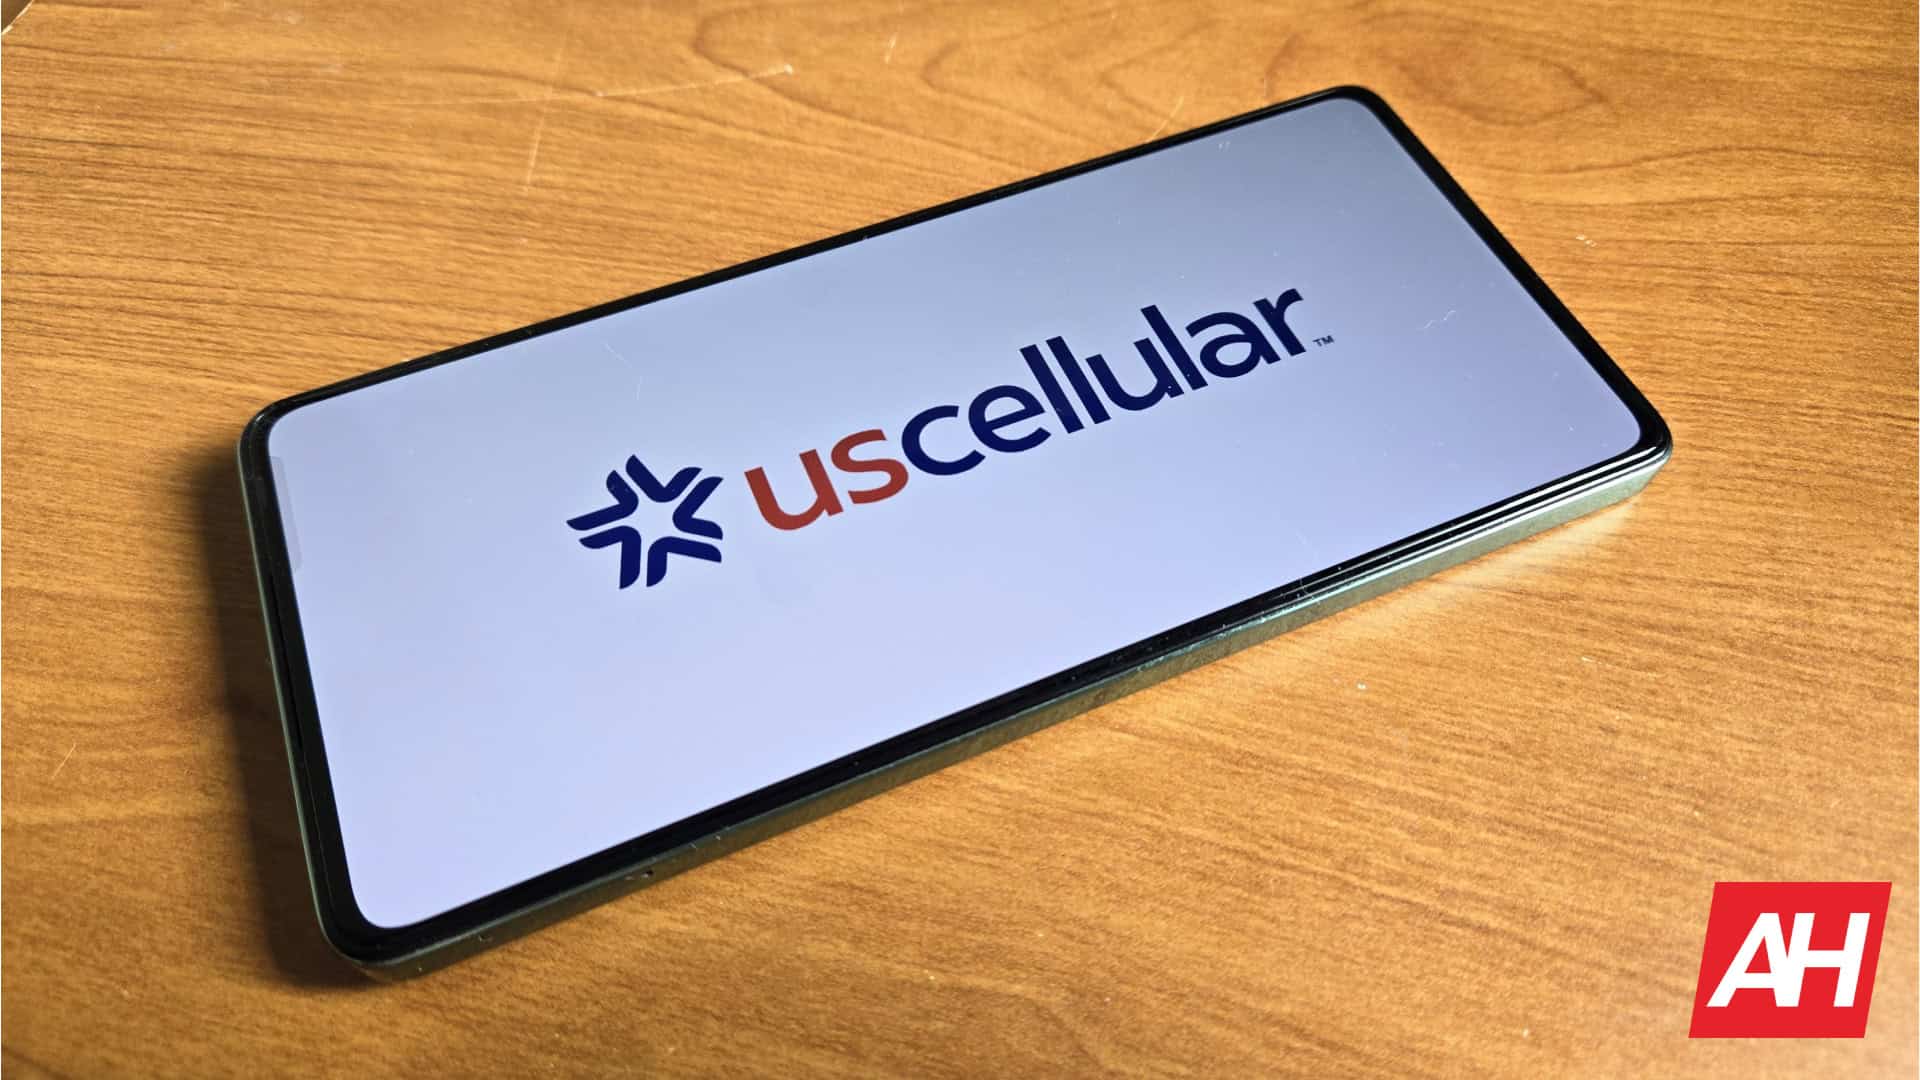 US Cellular será adquirida por T-Mobile y Verizon